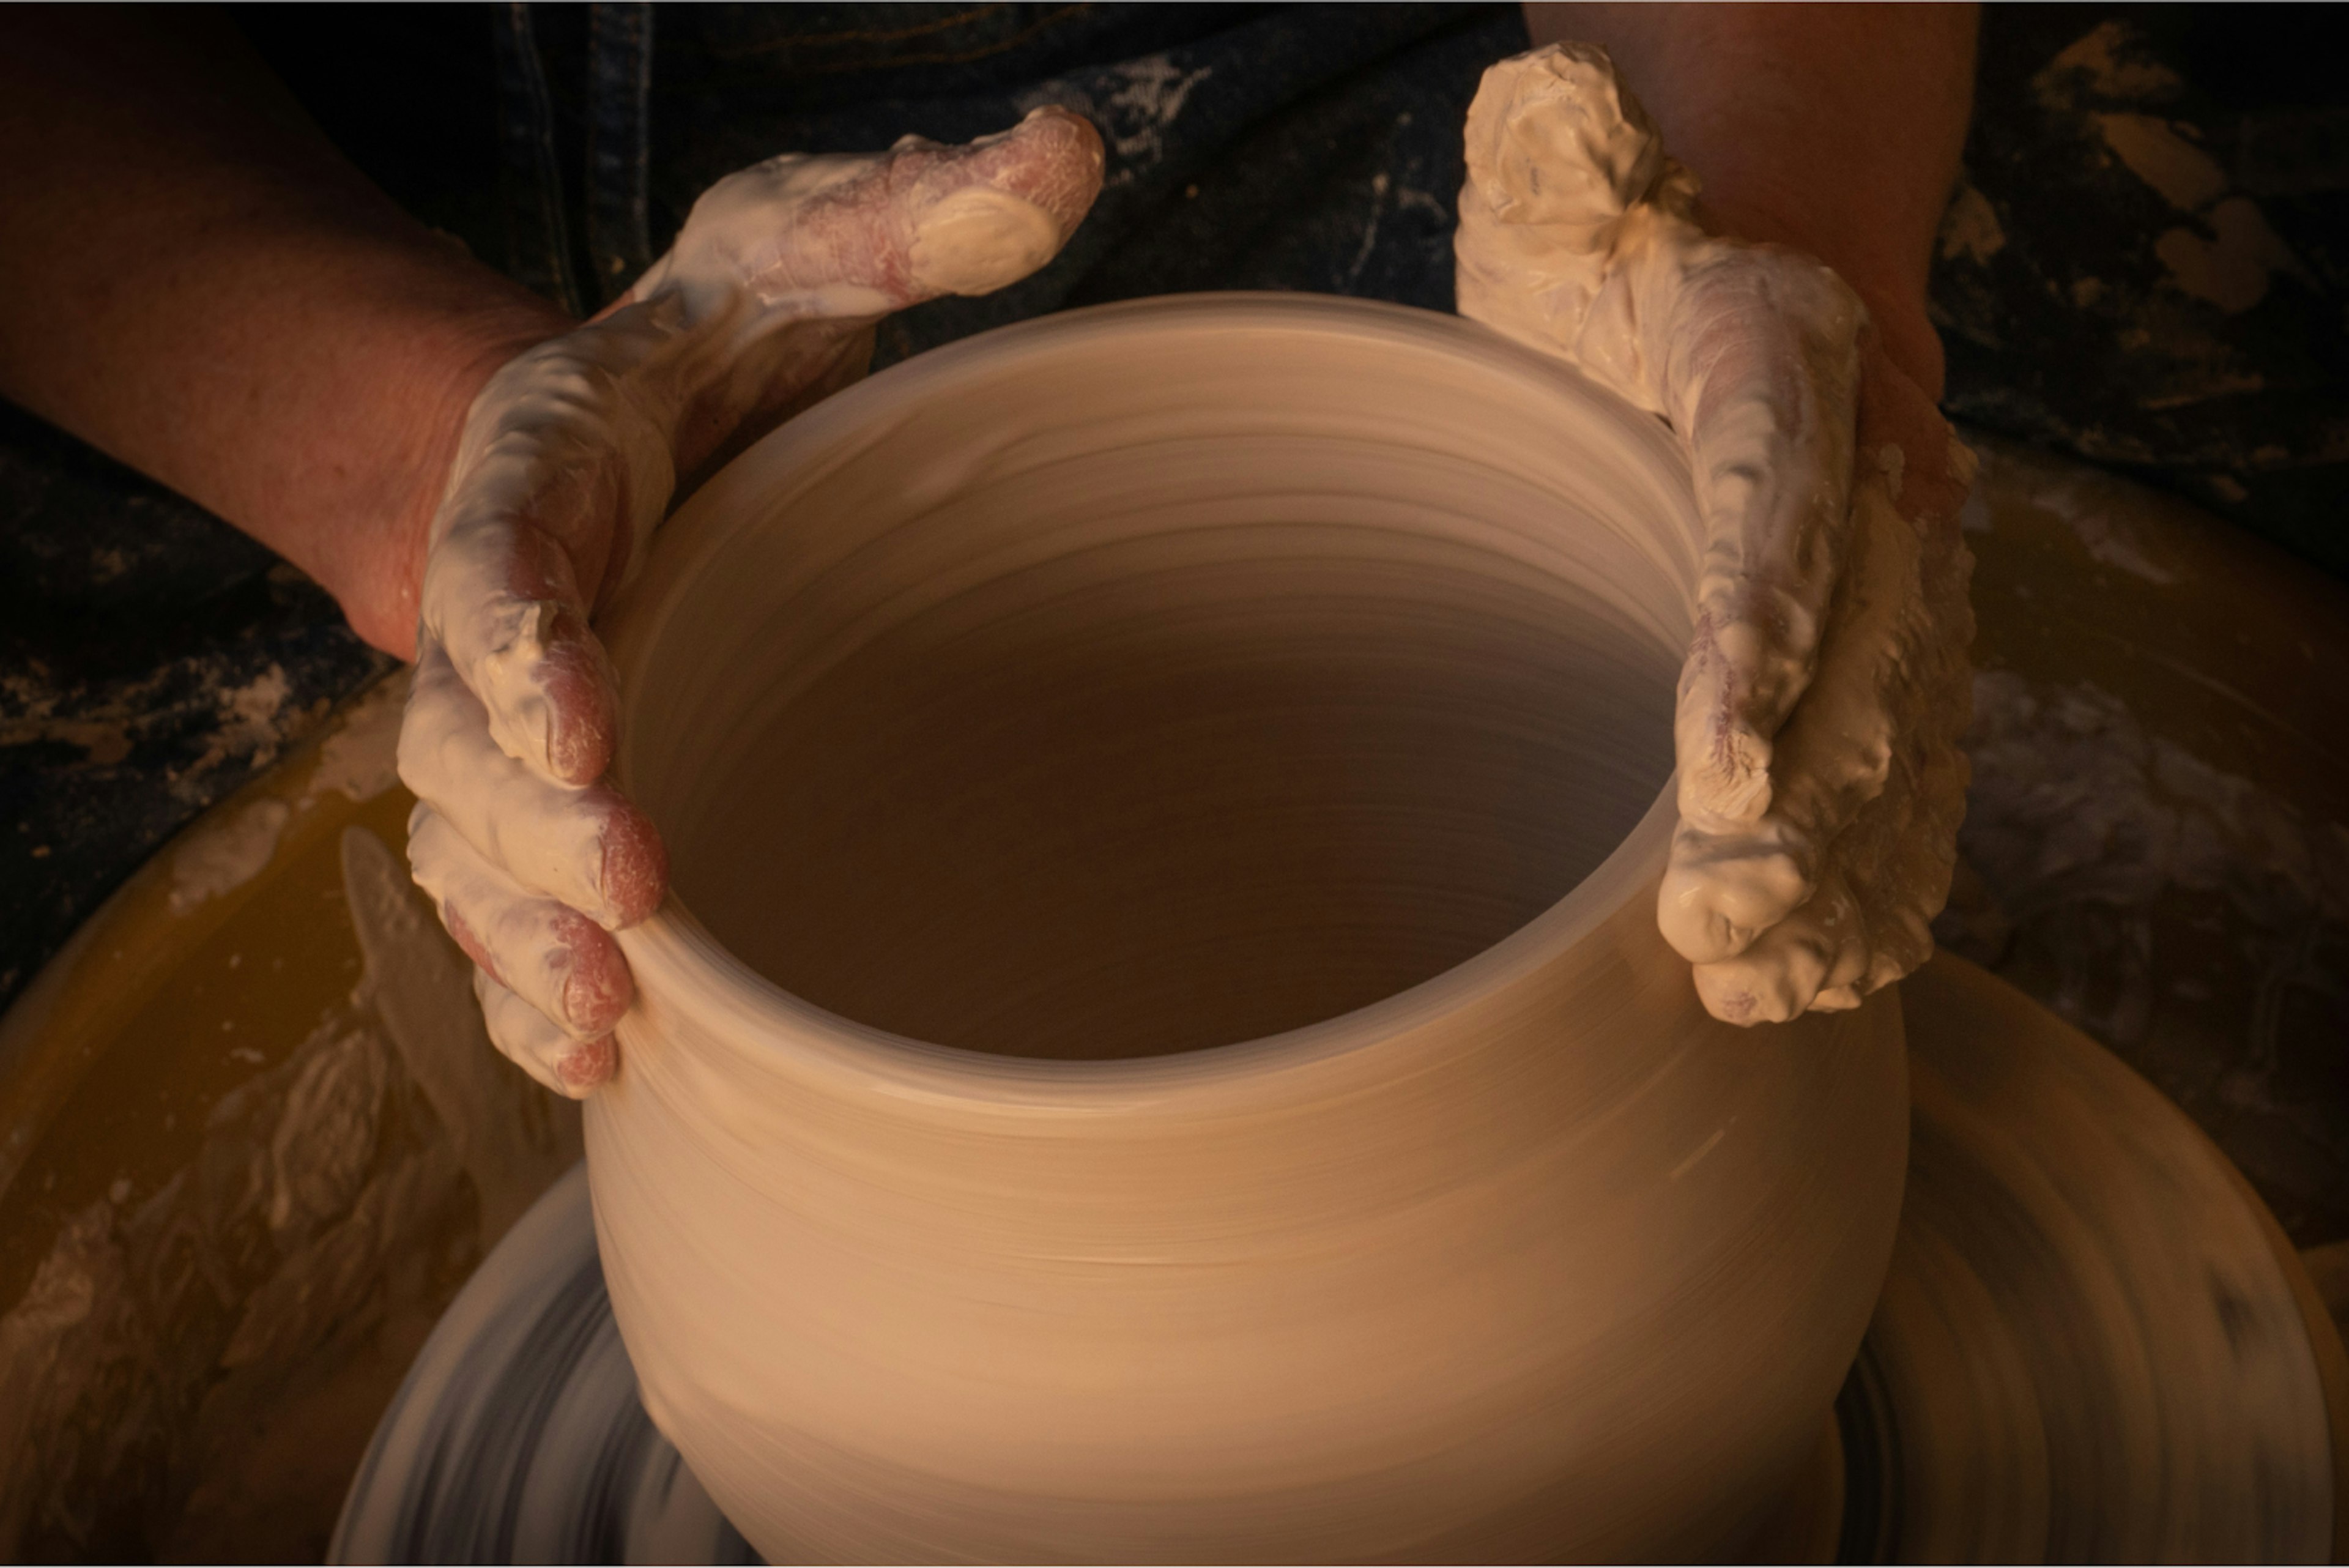 Hands molding a clay pot.